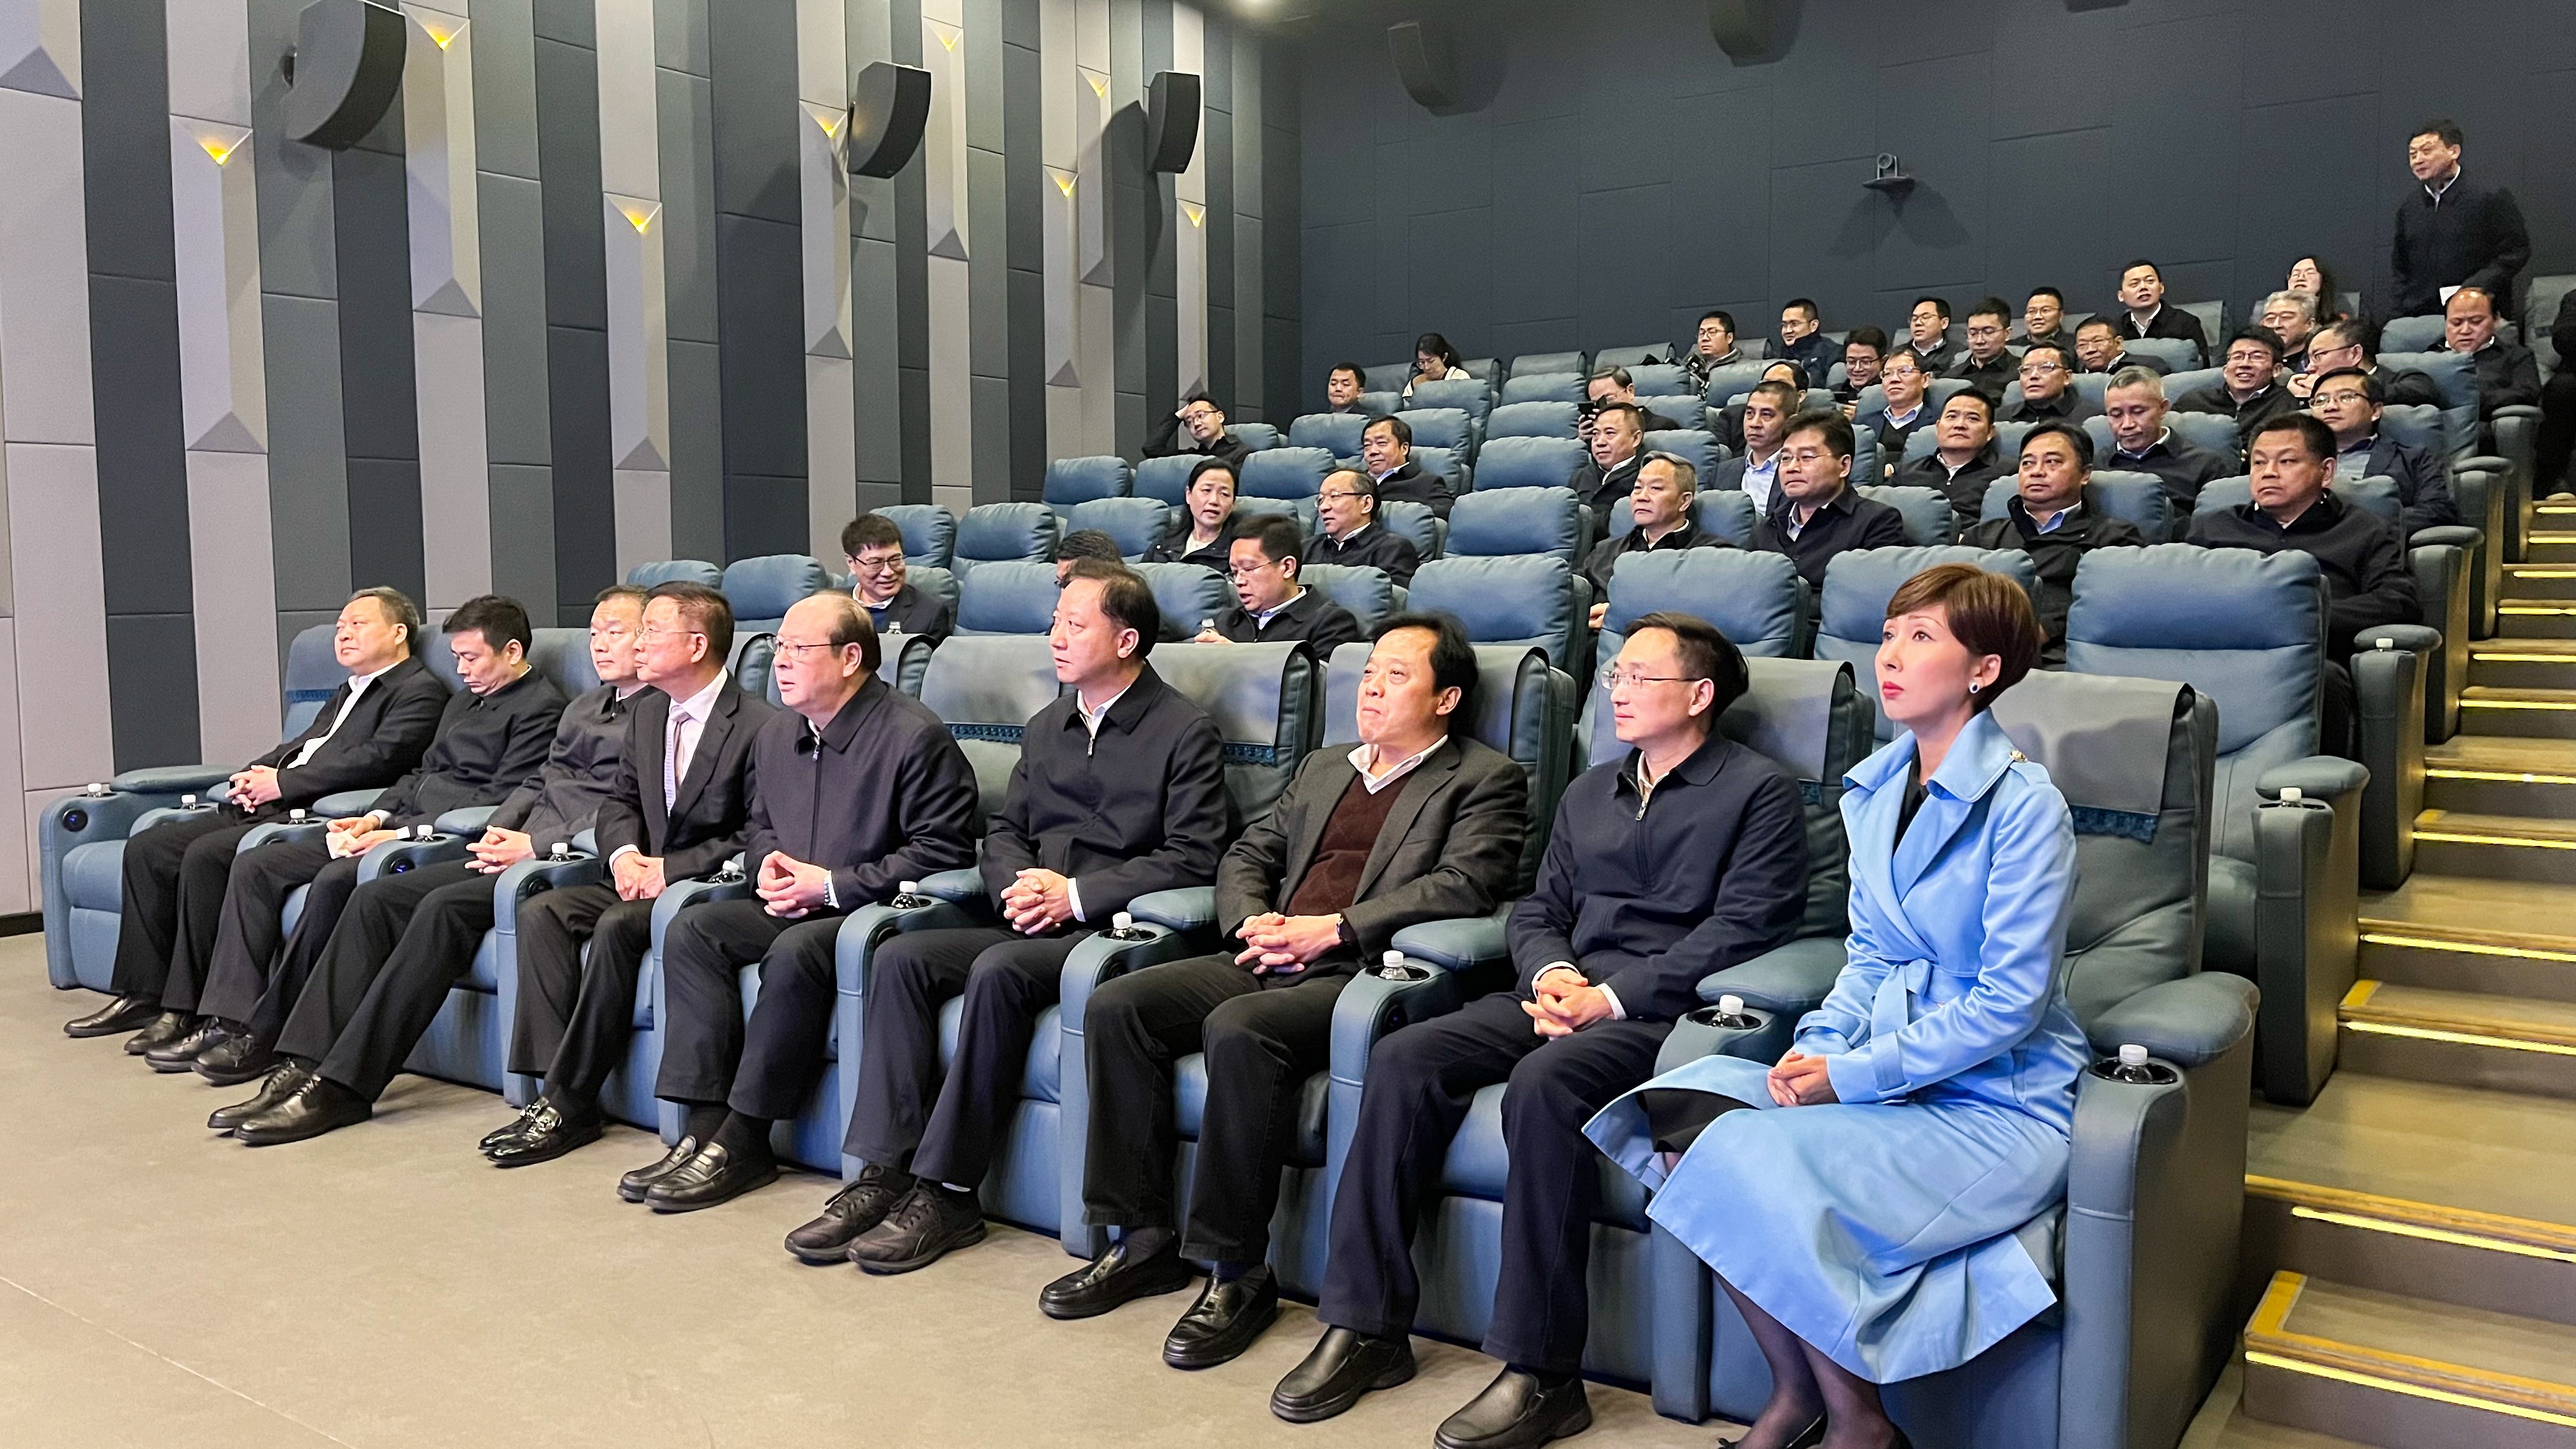 热点新闻 | 宁波、蚌埠两市党政领导一行赴音王集团考察调研